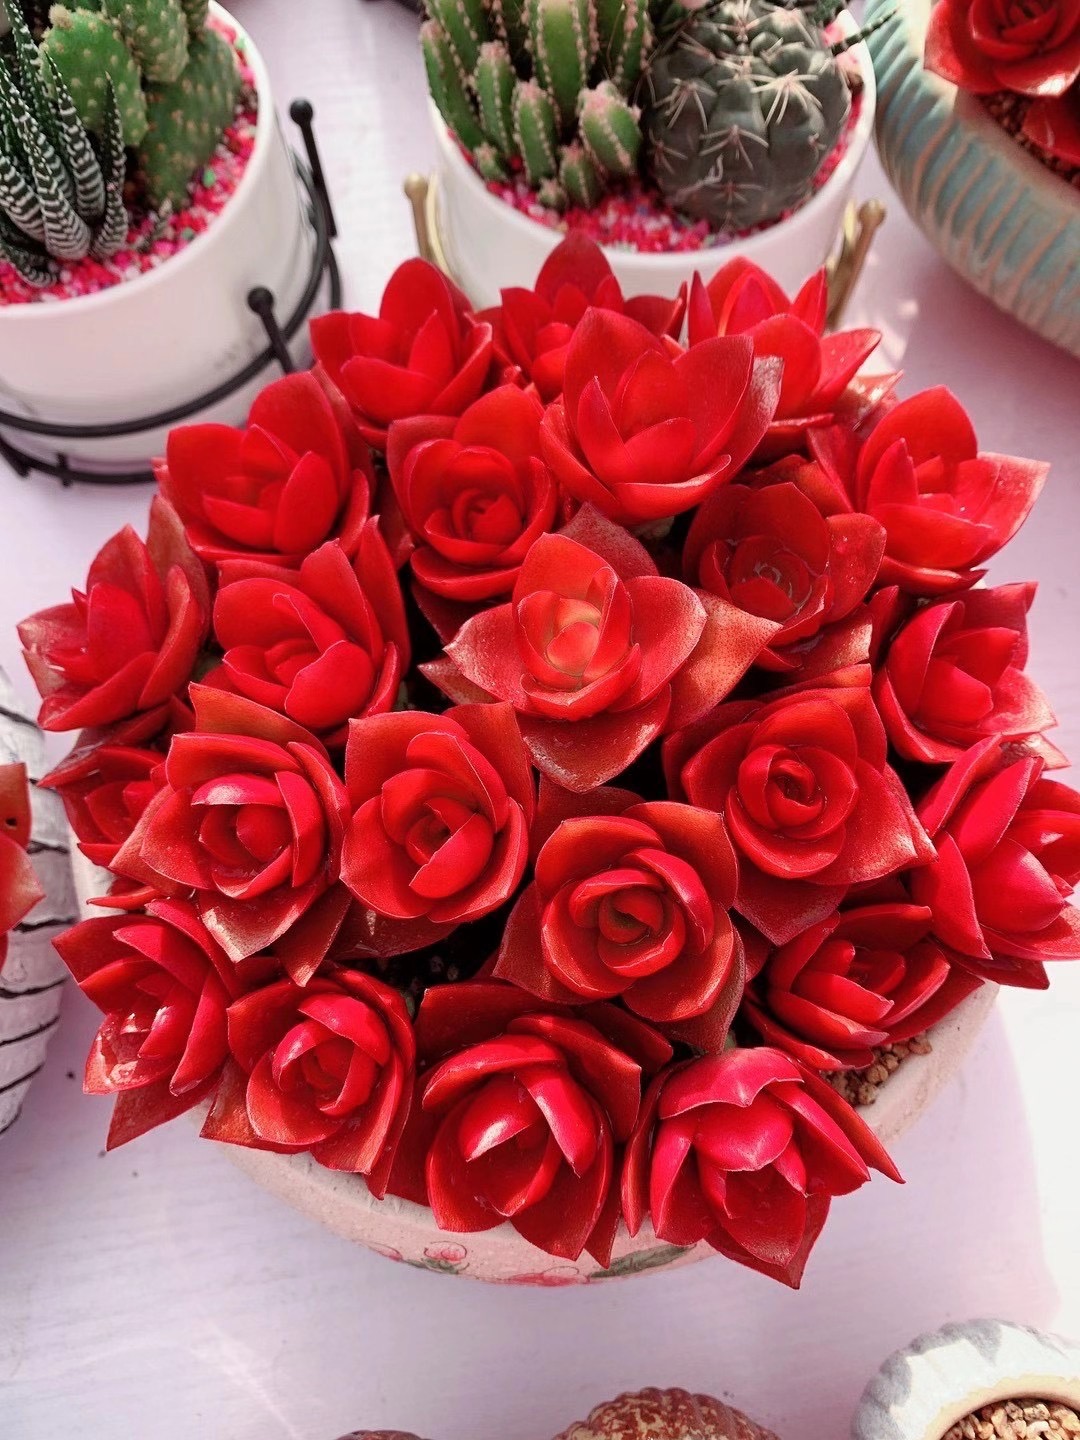 杂交红色玫瑰改良版火祭花卉多肉植物室内组合绿公主多肉盆栽礼物